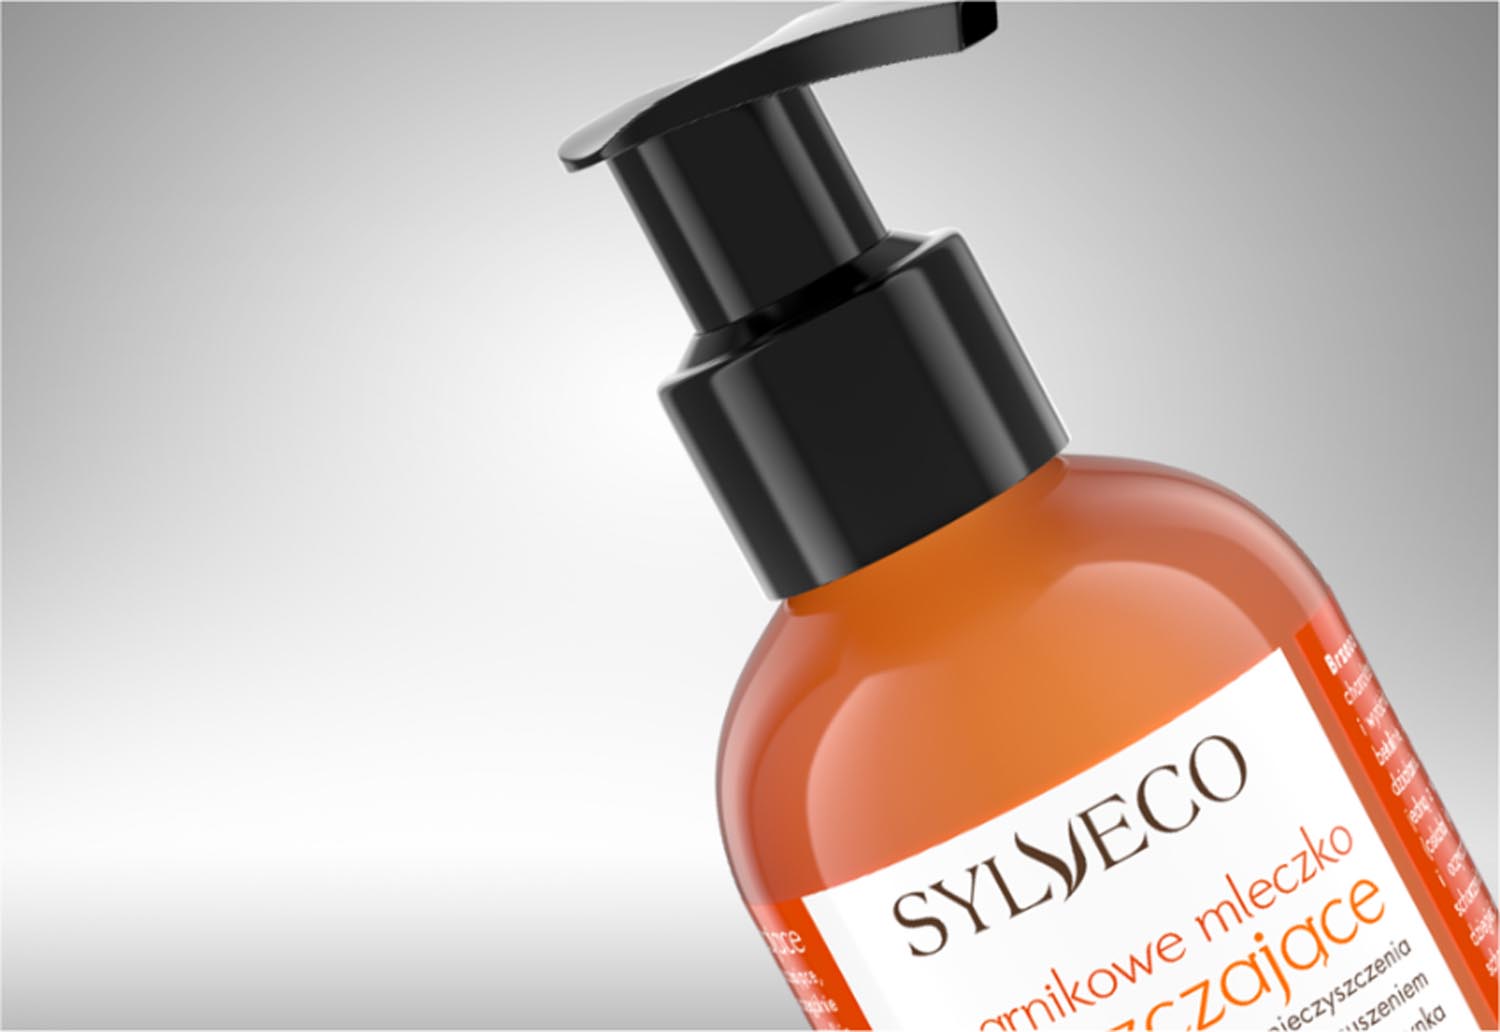 Packshoty produktów kosmetycznych 3D Sylveco